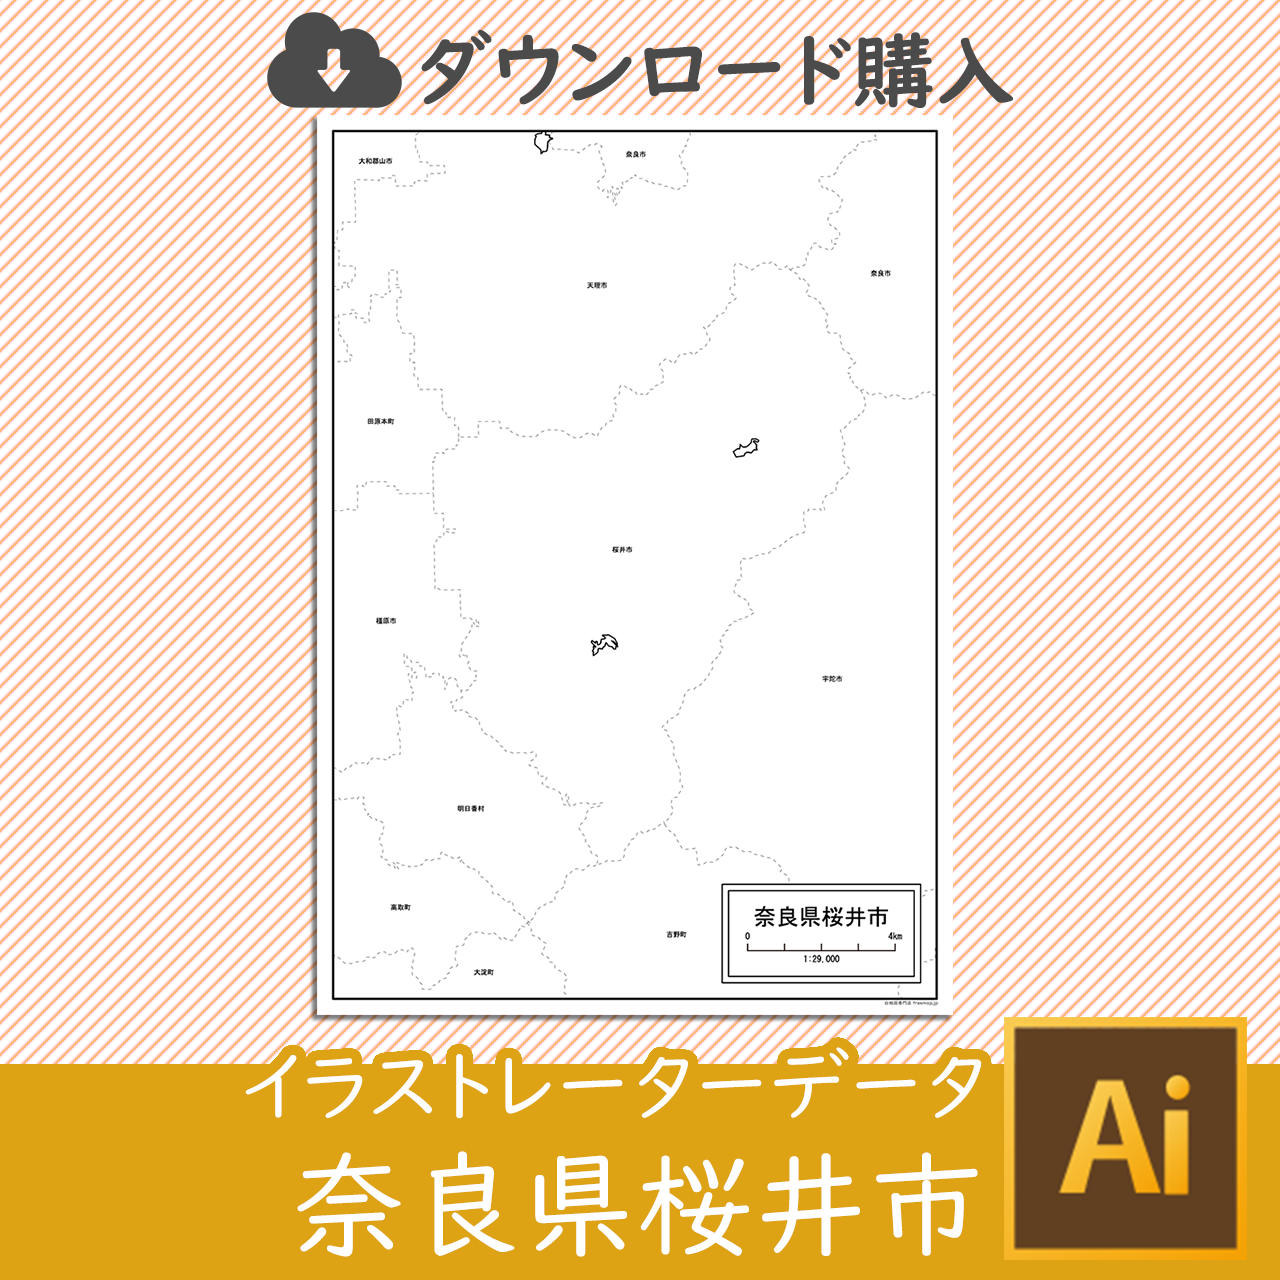 桜井市のaiデータのサムネイル画像